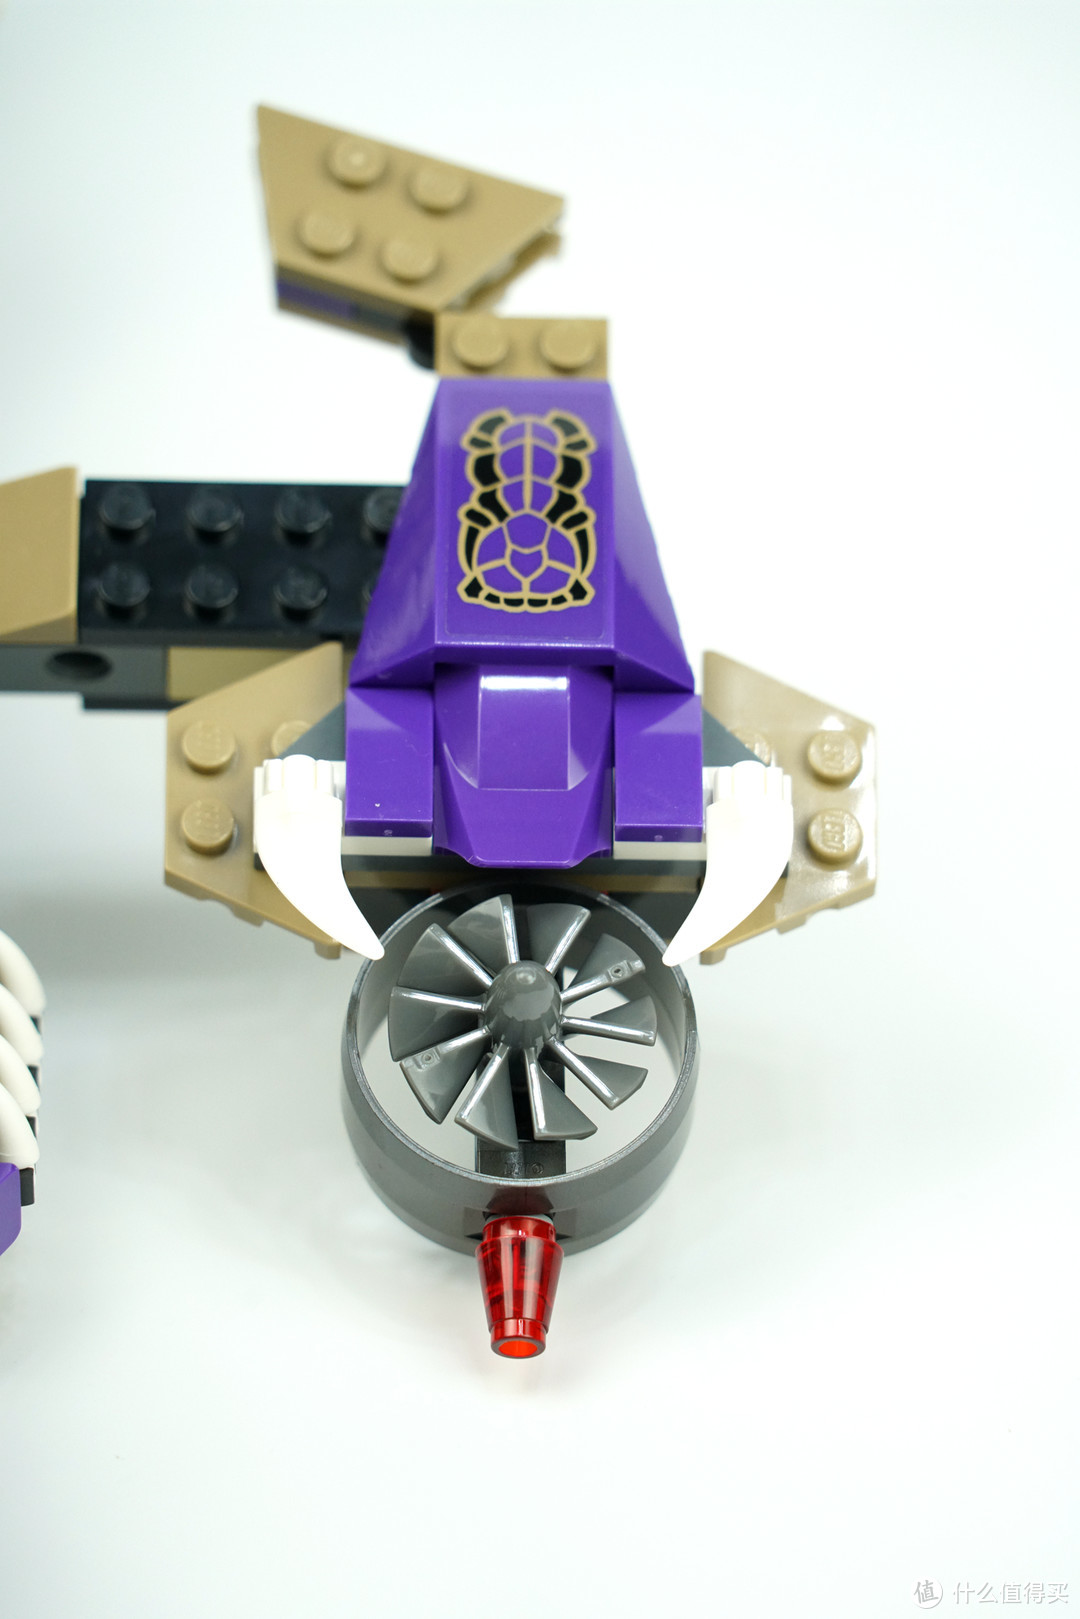 Lego 乐高 幻影忍者 Ninjago 狂蟒掠夺者直升机 70746 详细评测